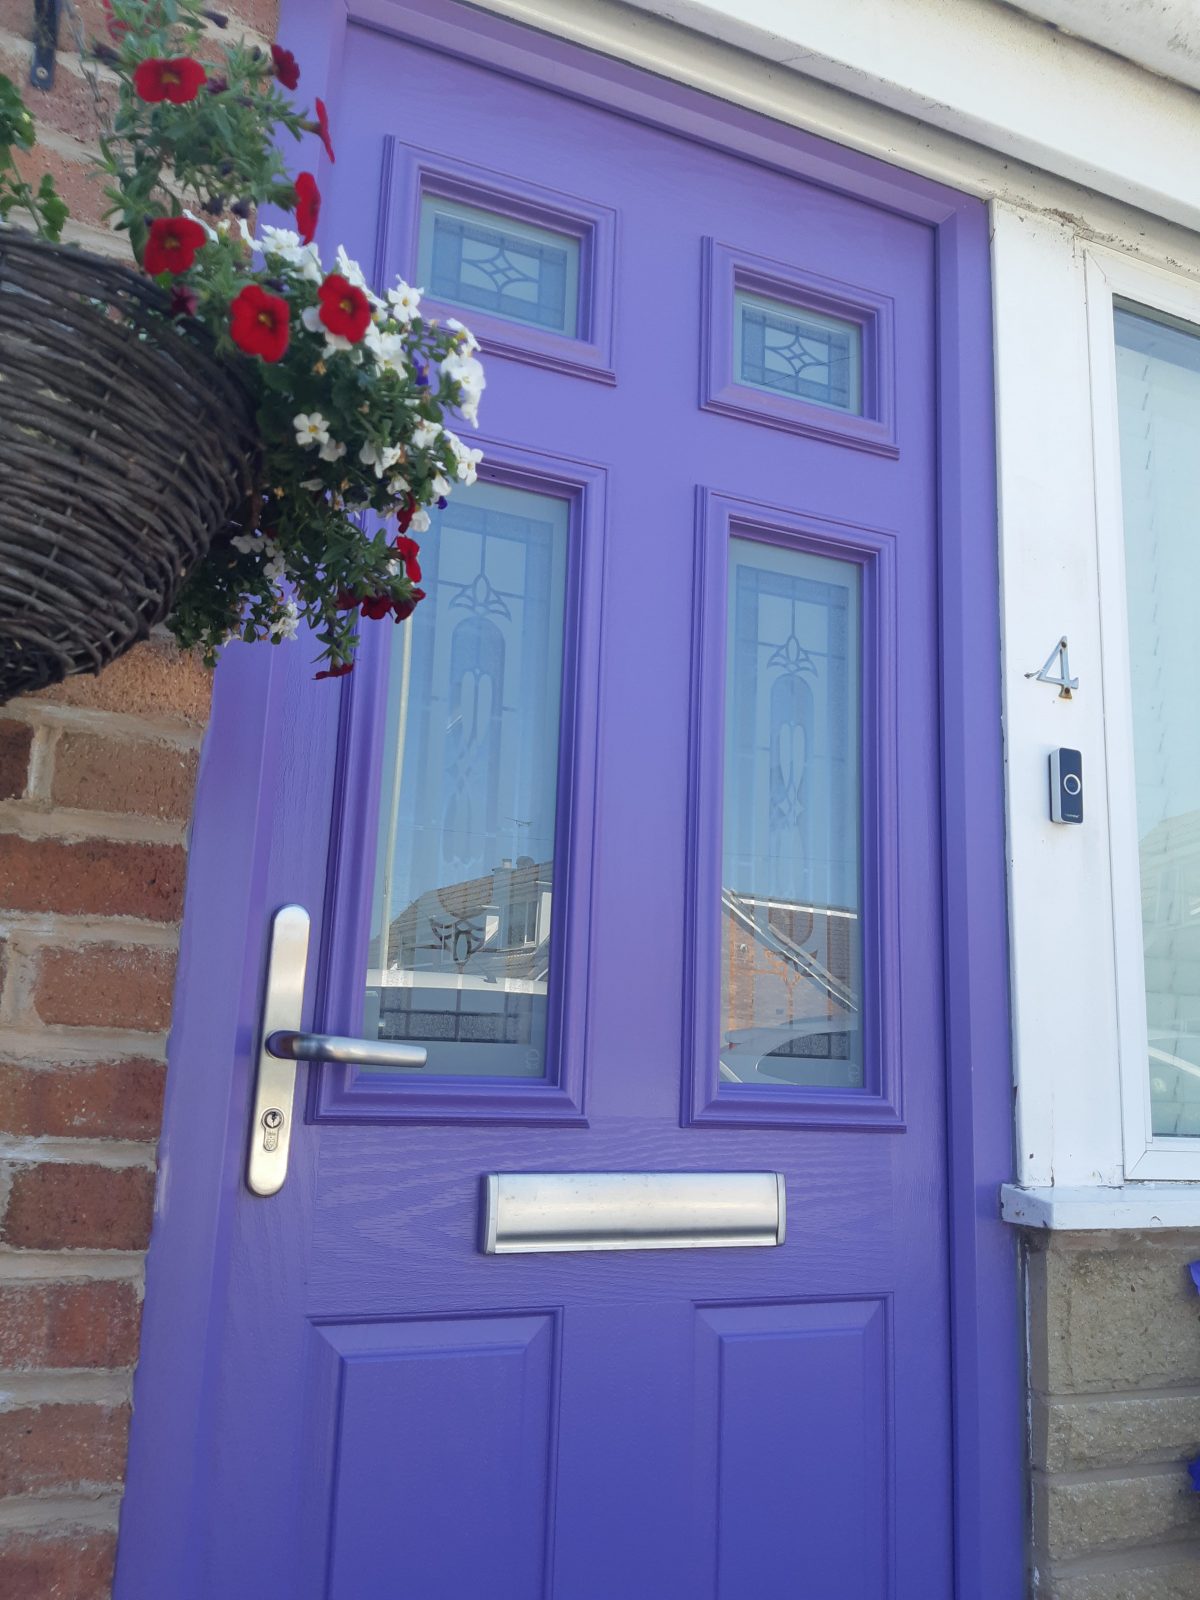 Lilac purple composite front door